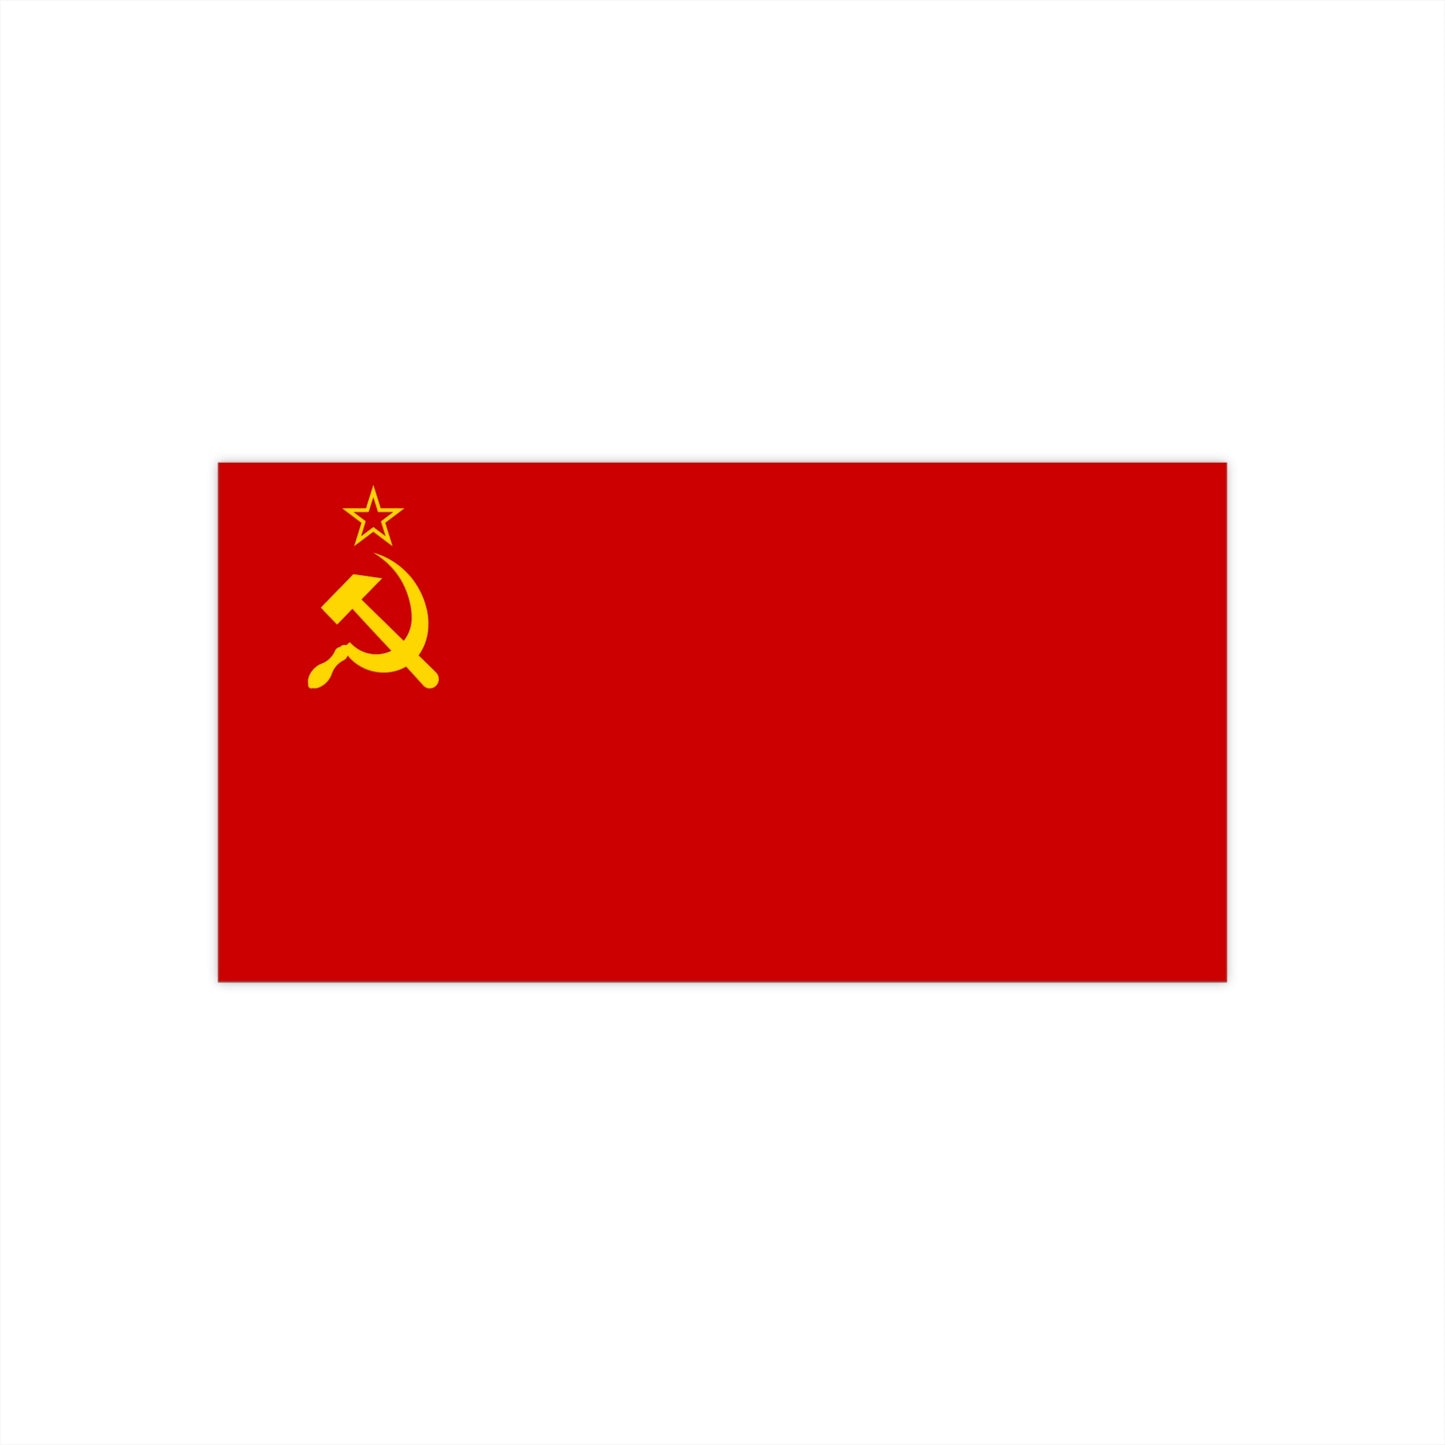 USSR /СССР Flag Bumper Stickers